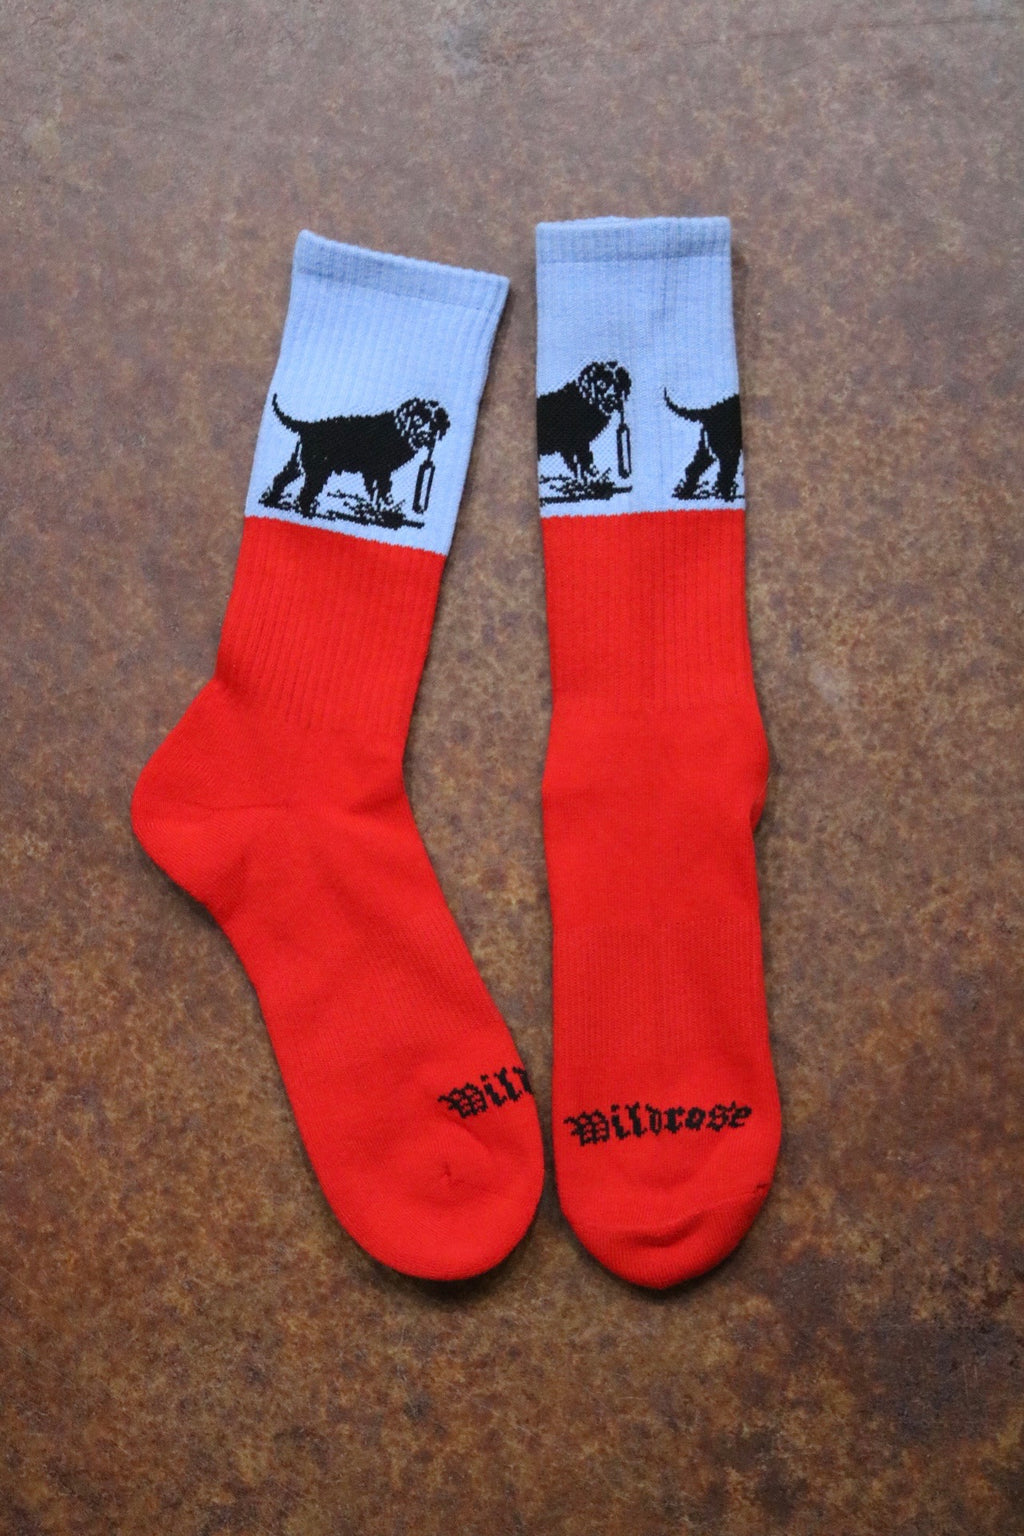 Wildrose Socks by Dead Soxy